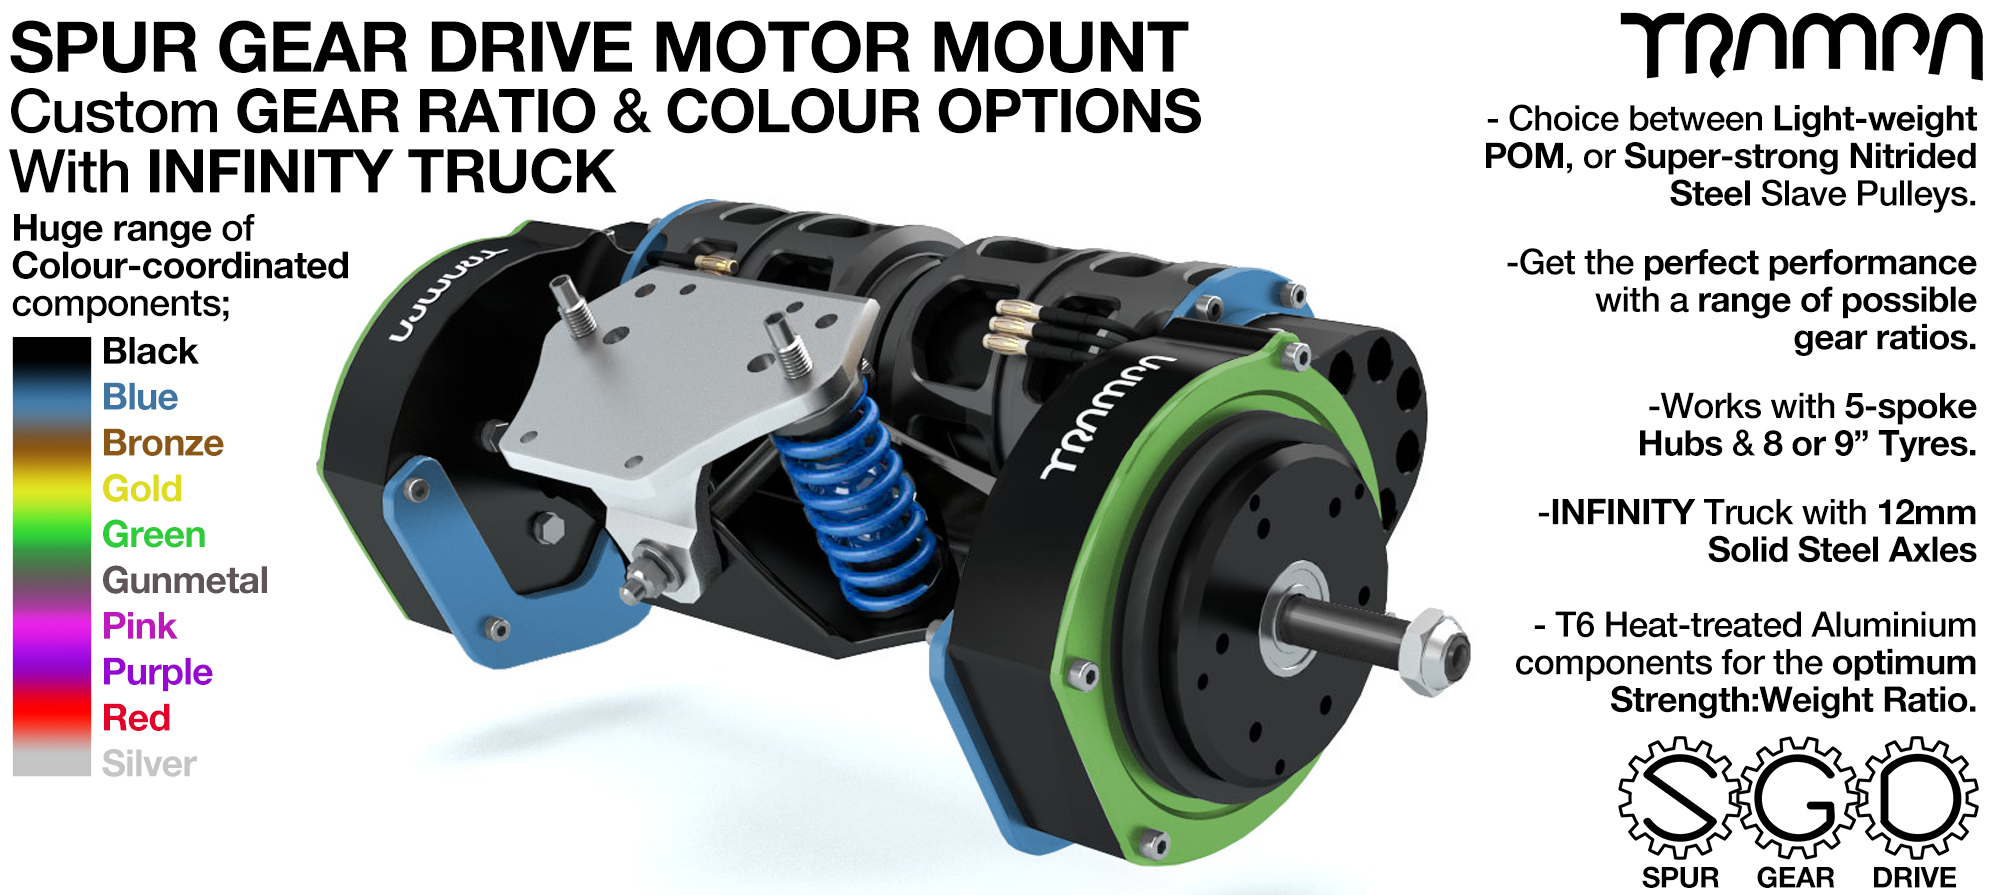 Mountainboard Spur Gear Drive TWIN Motor Mounts with Motors on a custom CHANNEL Truck 